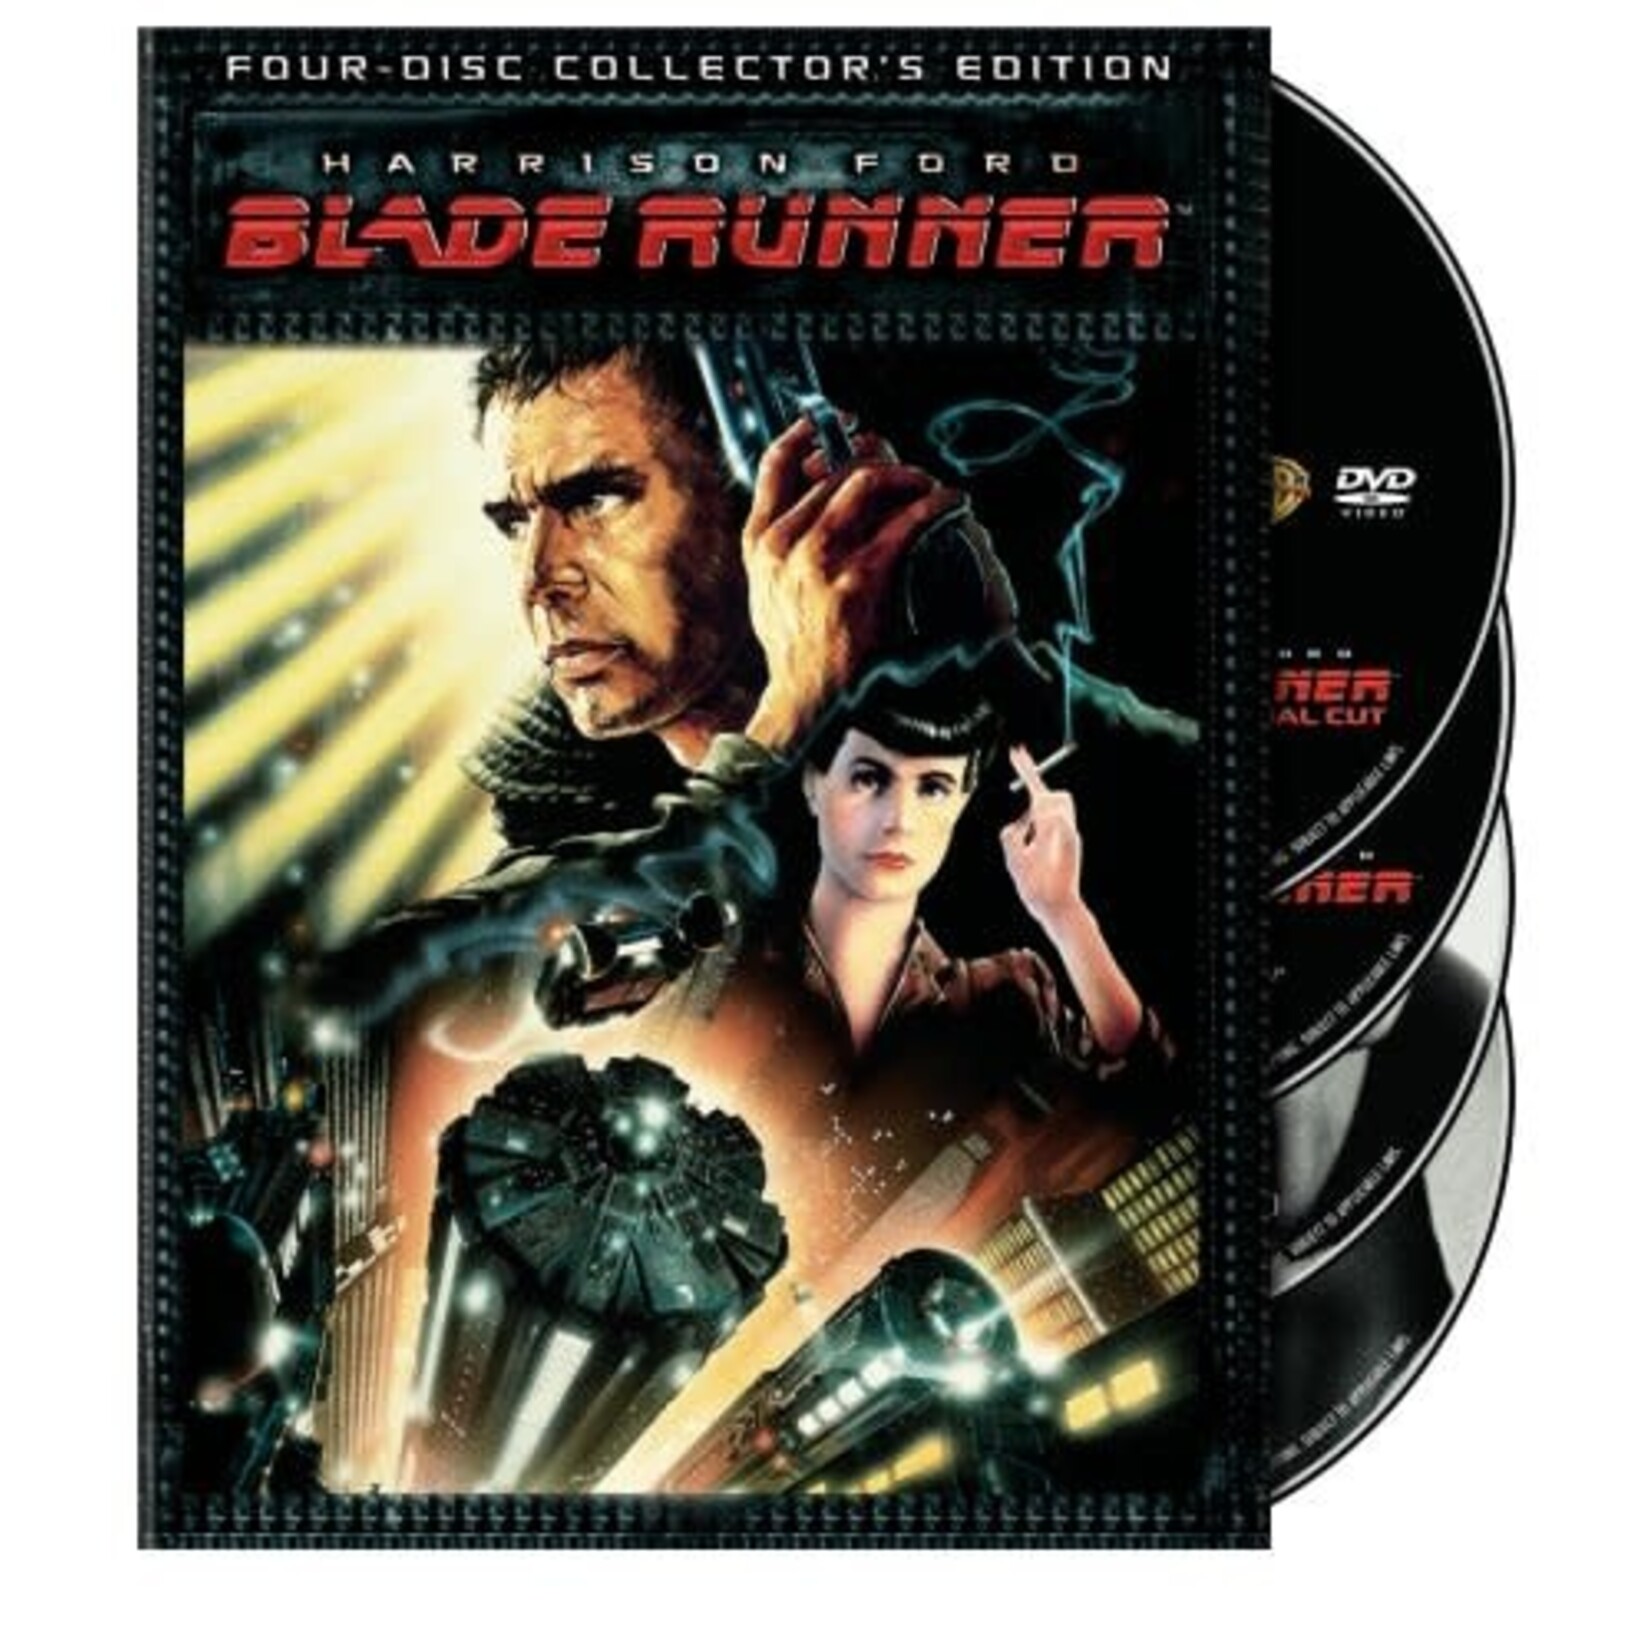 Blade Runner (1982) (Coll Ed) [USED 4DVD]